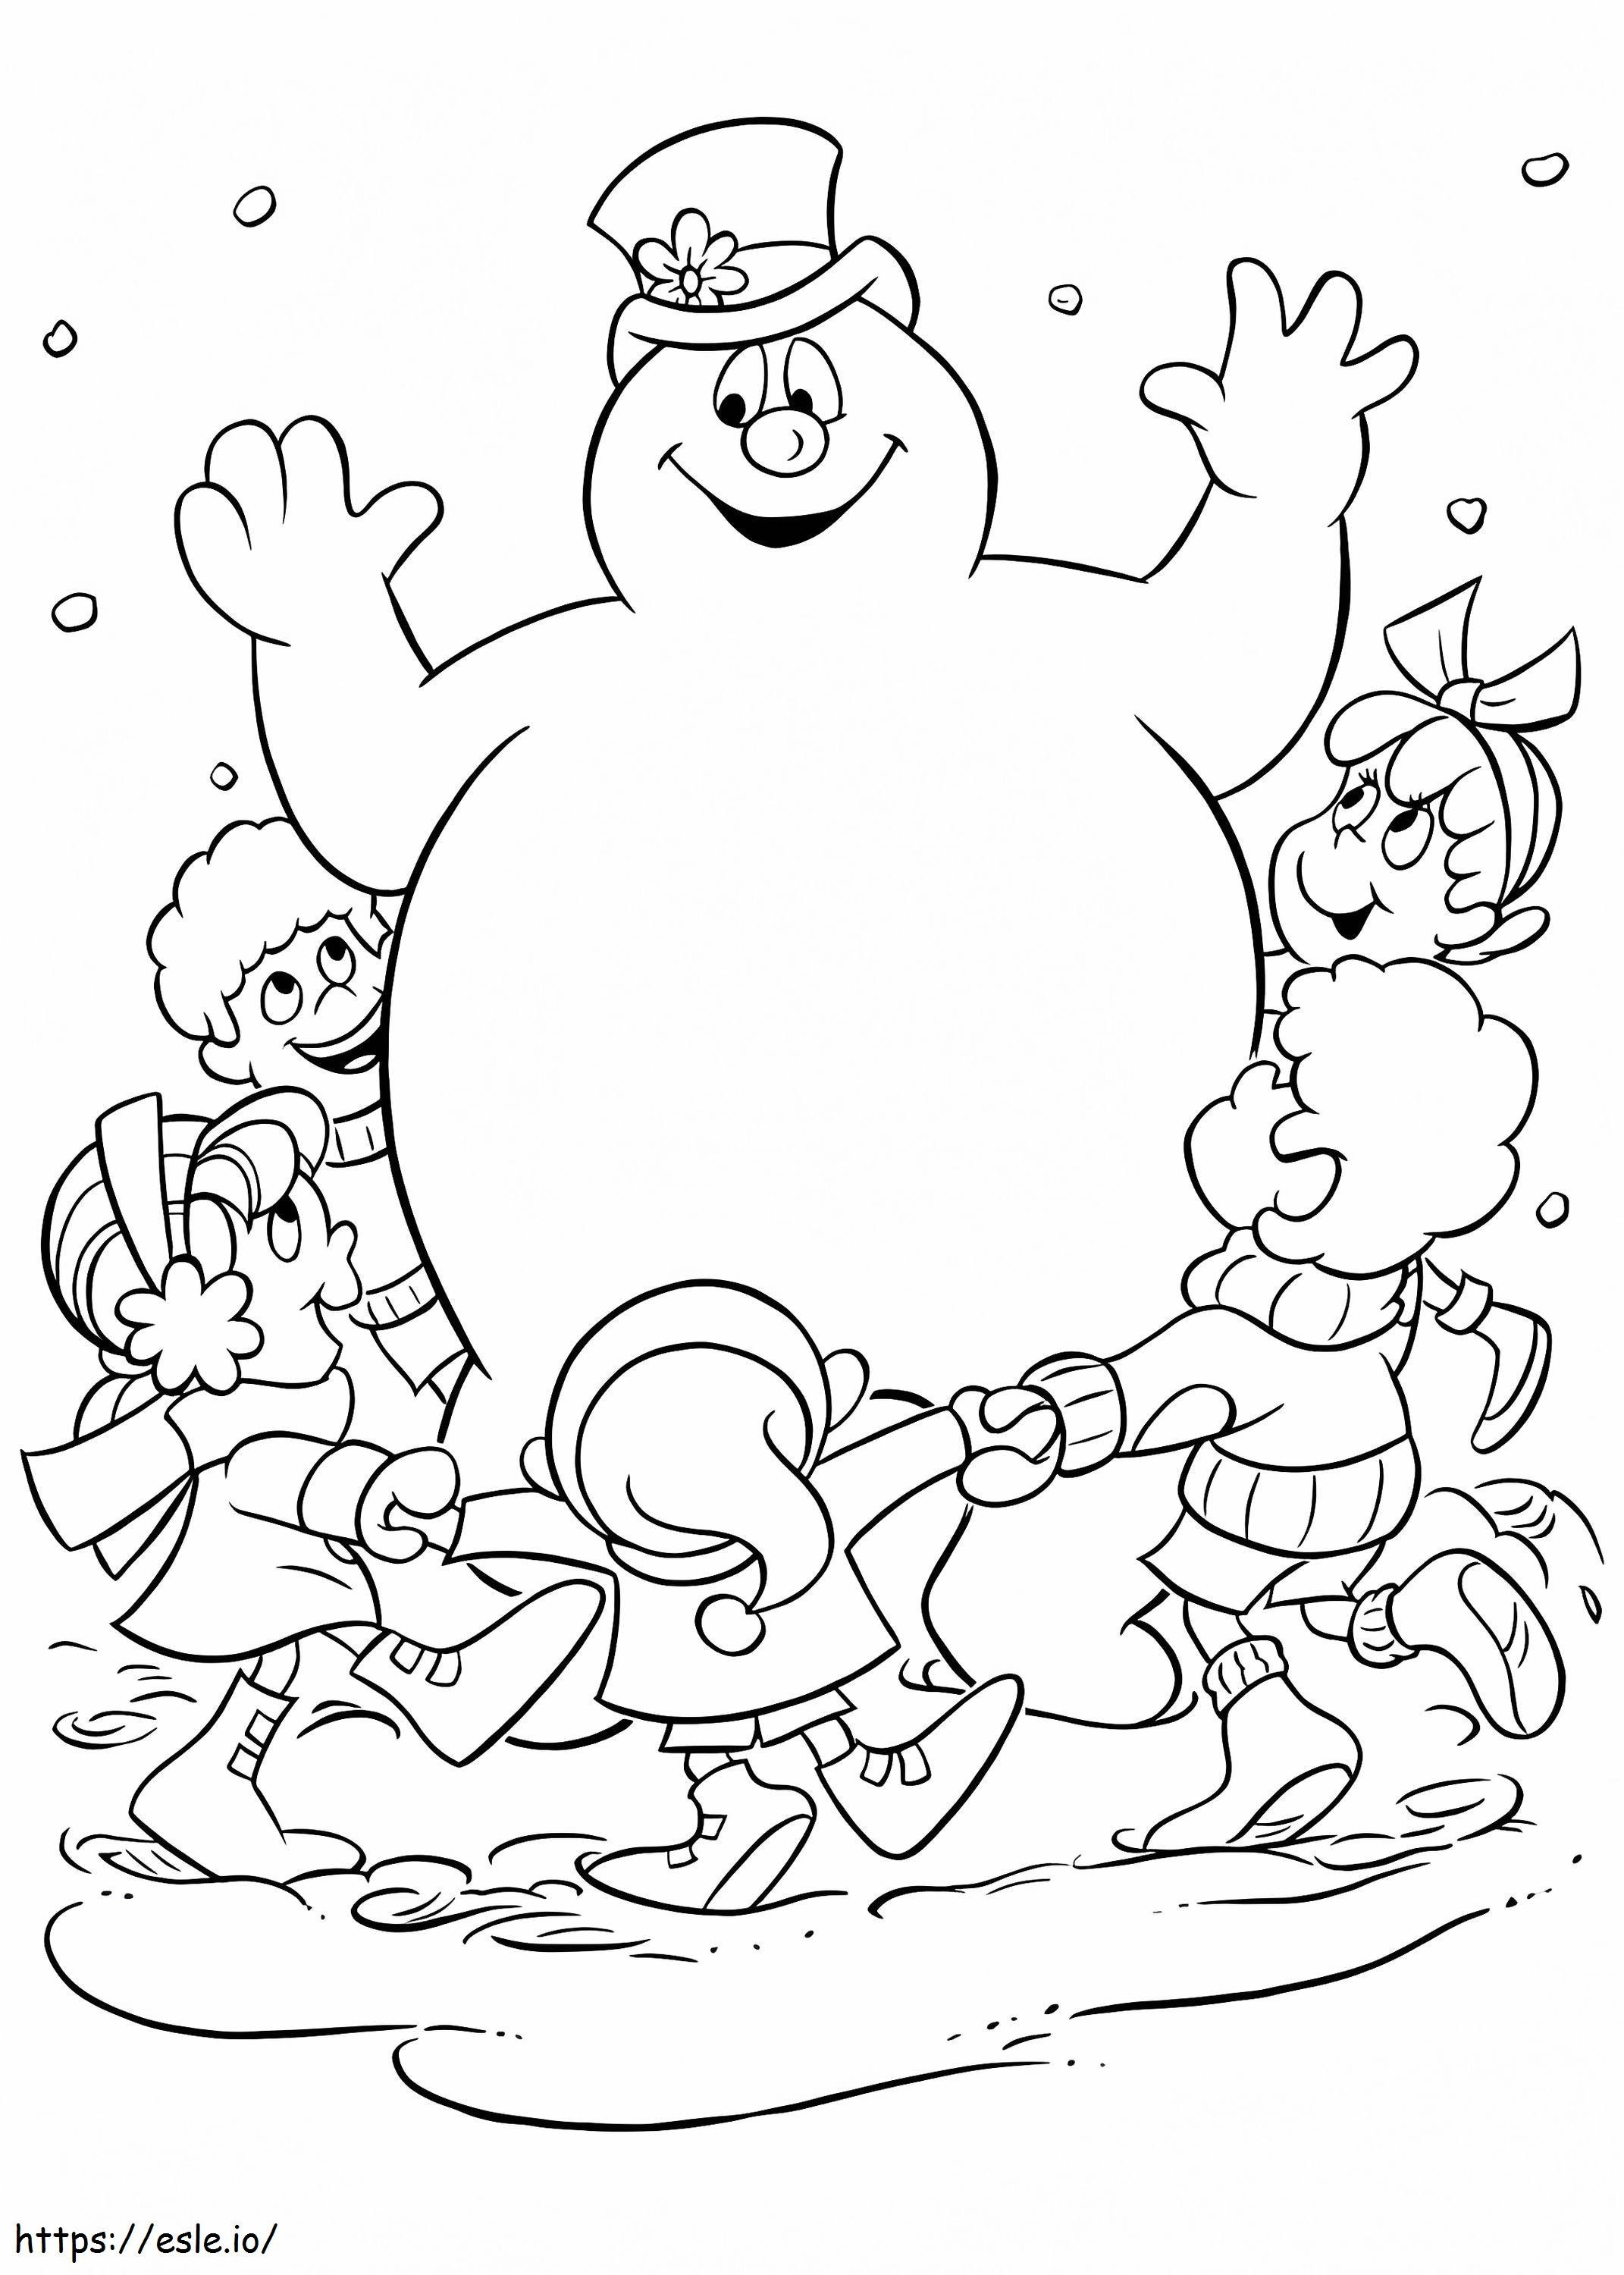  Frosty Con Bambini A4 da colorare